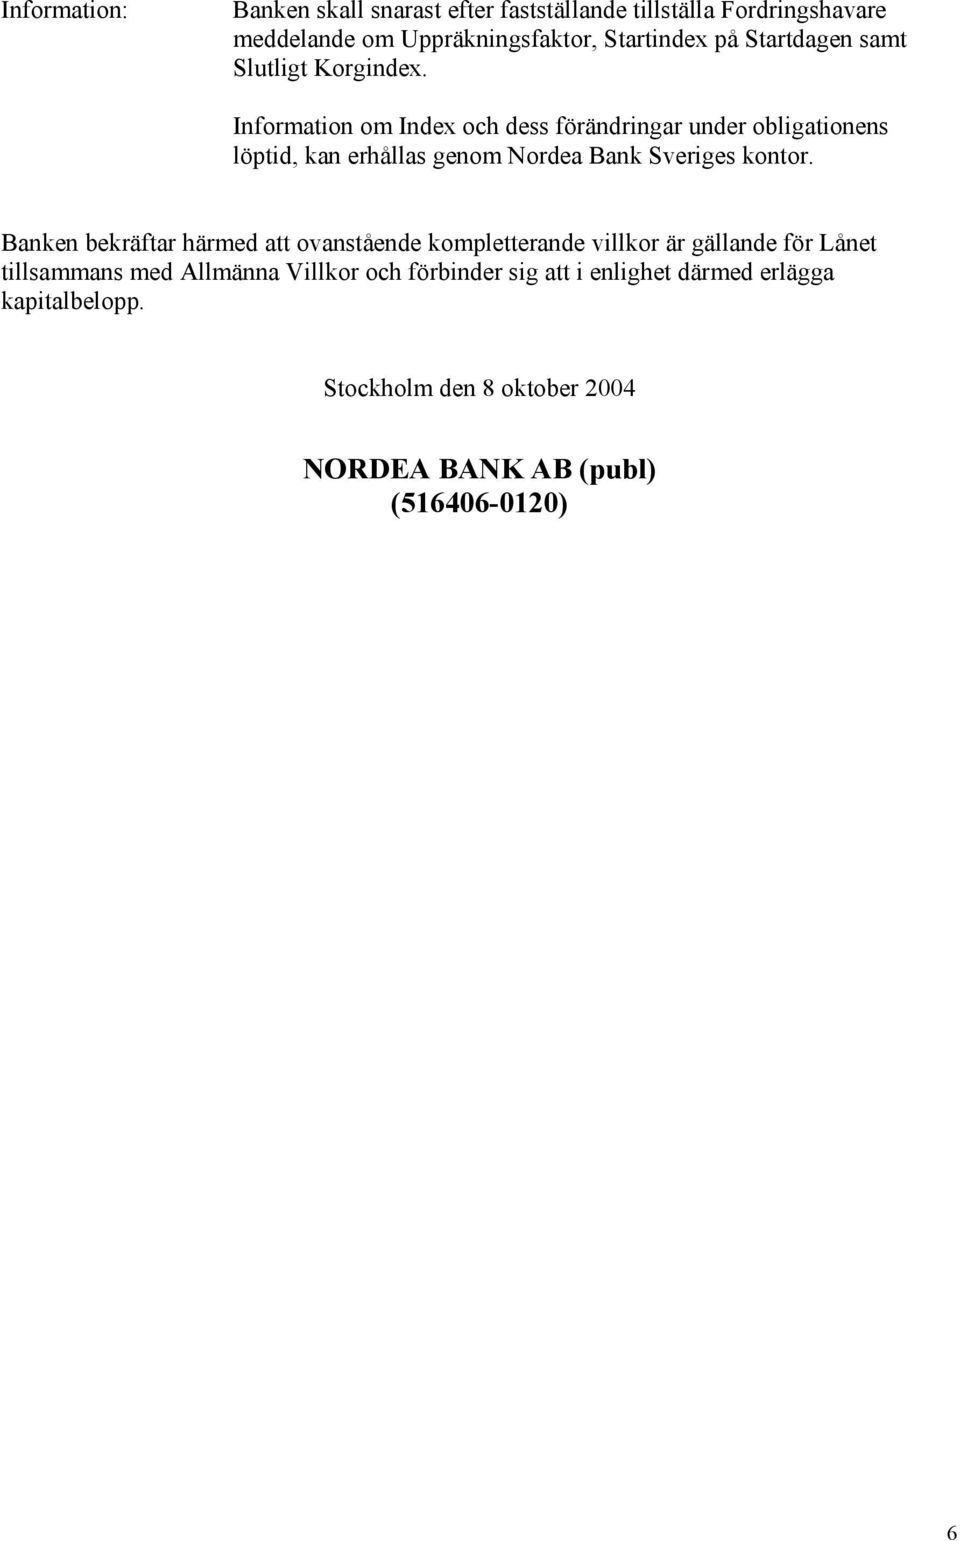 Information om Index och dess förändringar under obligationens löptid, kan erhållas genom Nordea Bank Sveriges kontor.